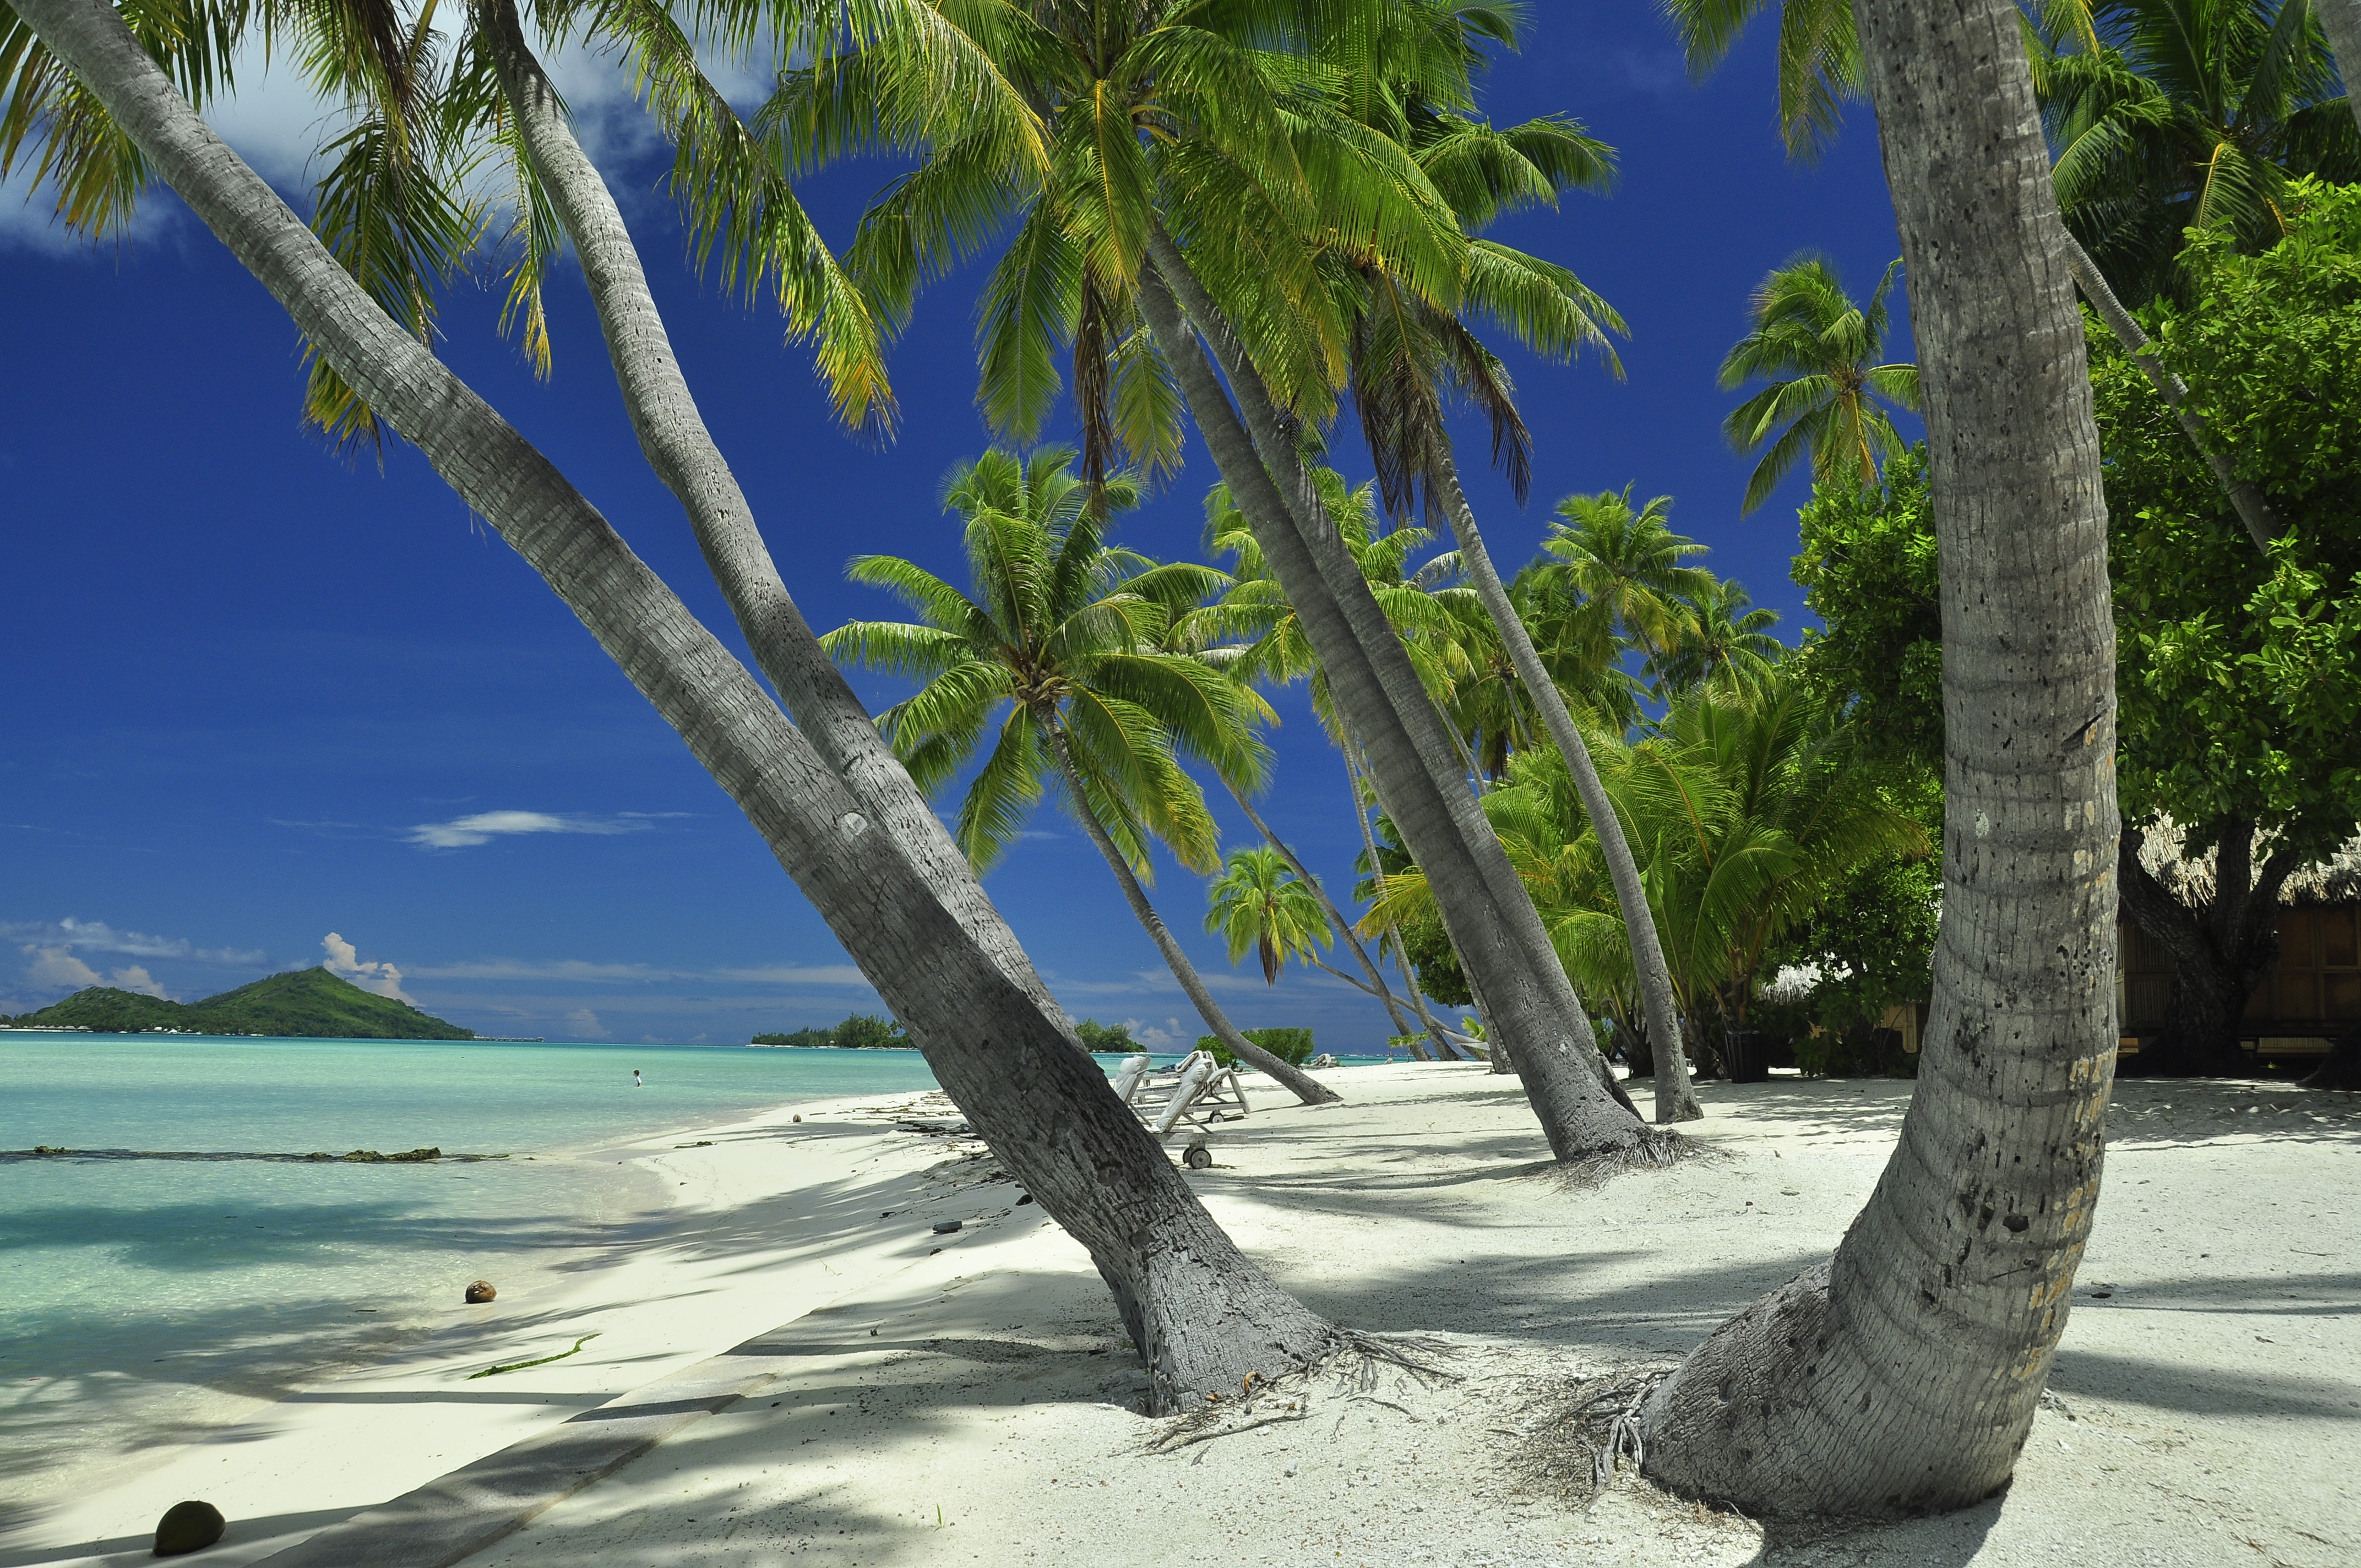 Скачать обои Французская Полинезия на телефон бесплатно